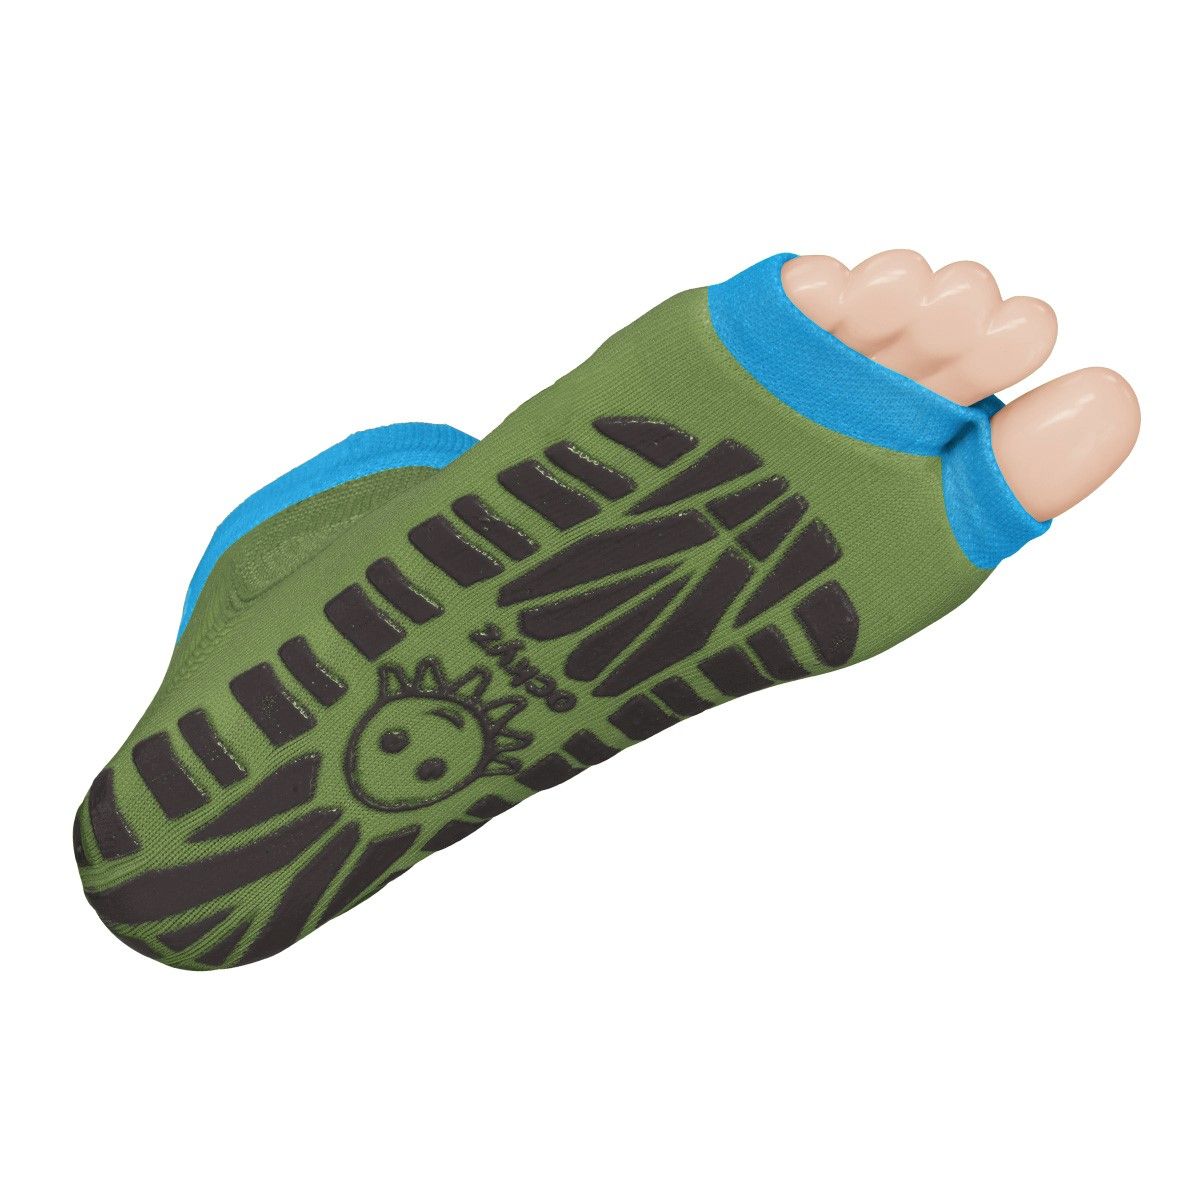 Sweakers Anti-Rutsch-Schwimm-Socken, grün, Größe 23-26